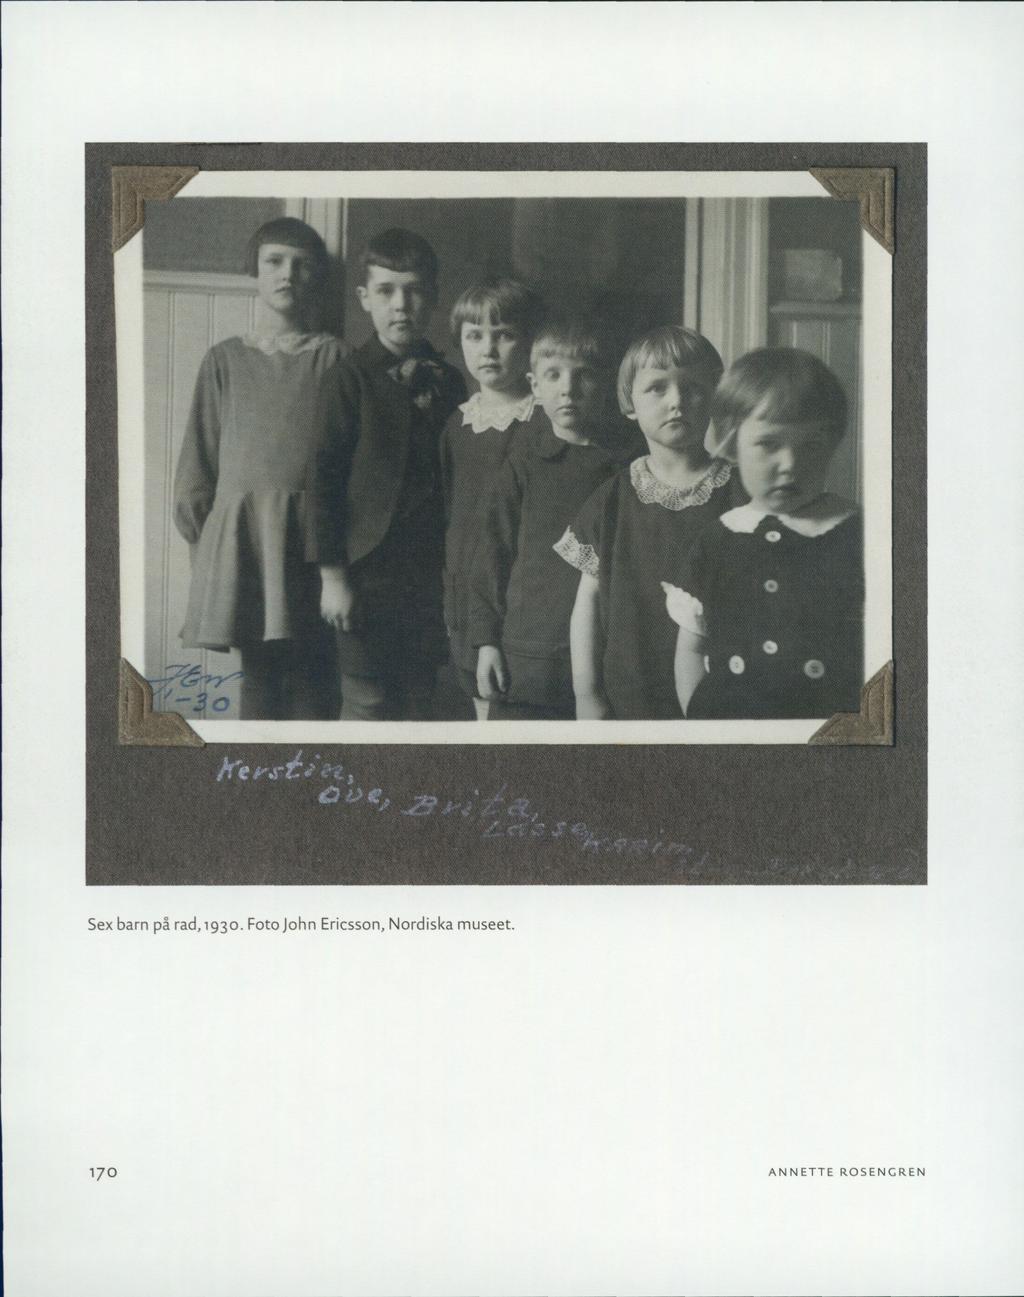 & Sex barn på rad,1930.